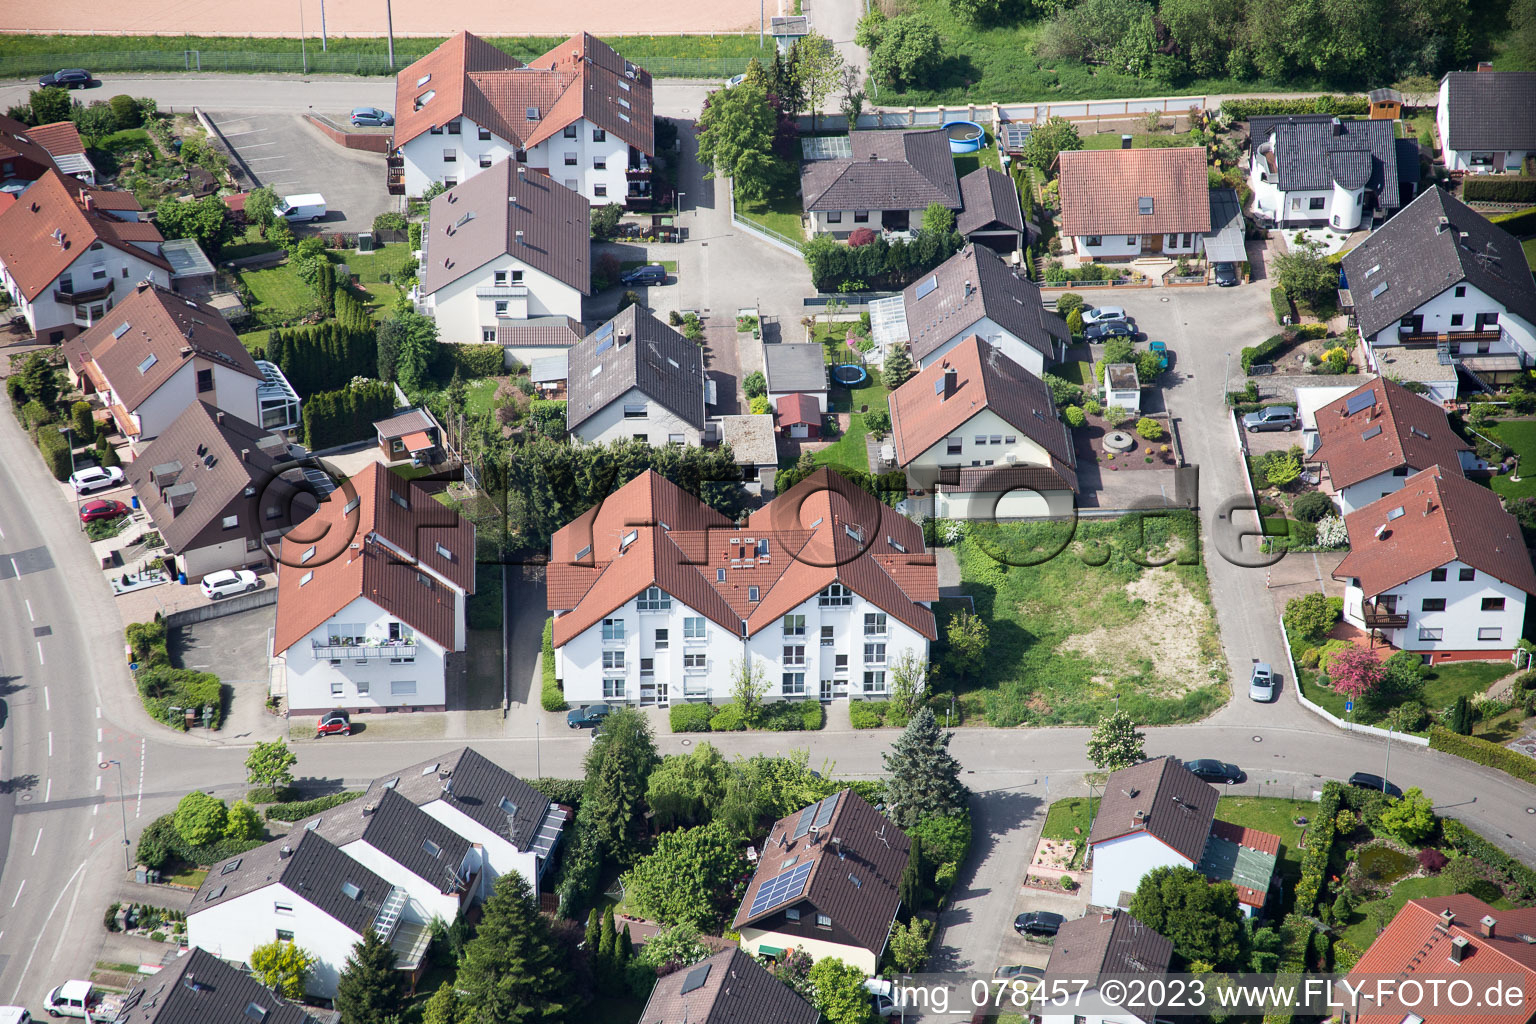 Hagenbach im Bundesland Rheinland-Pfalz, Deutschland von oben gesehen